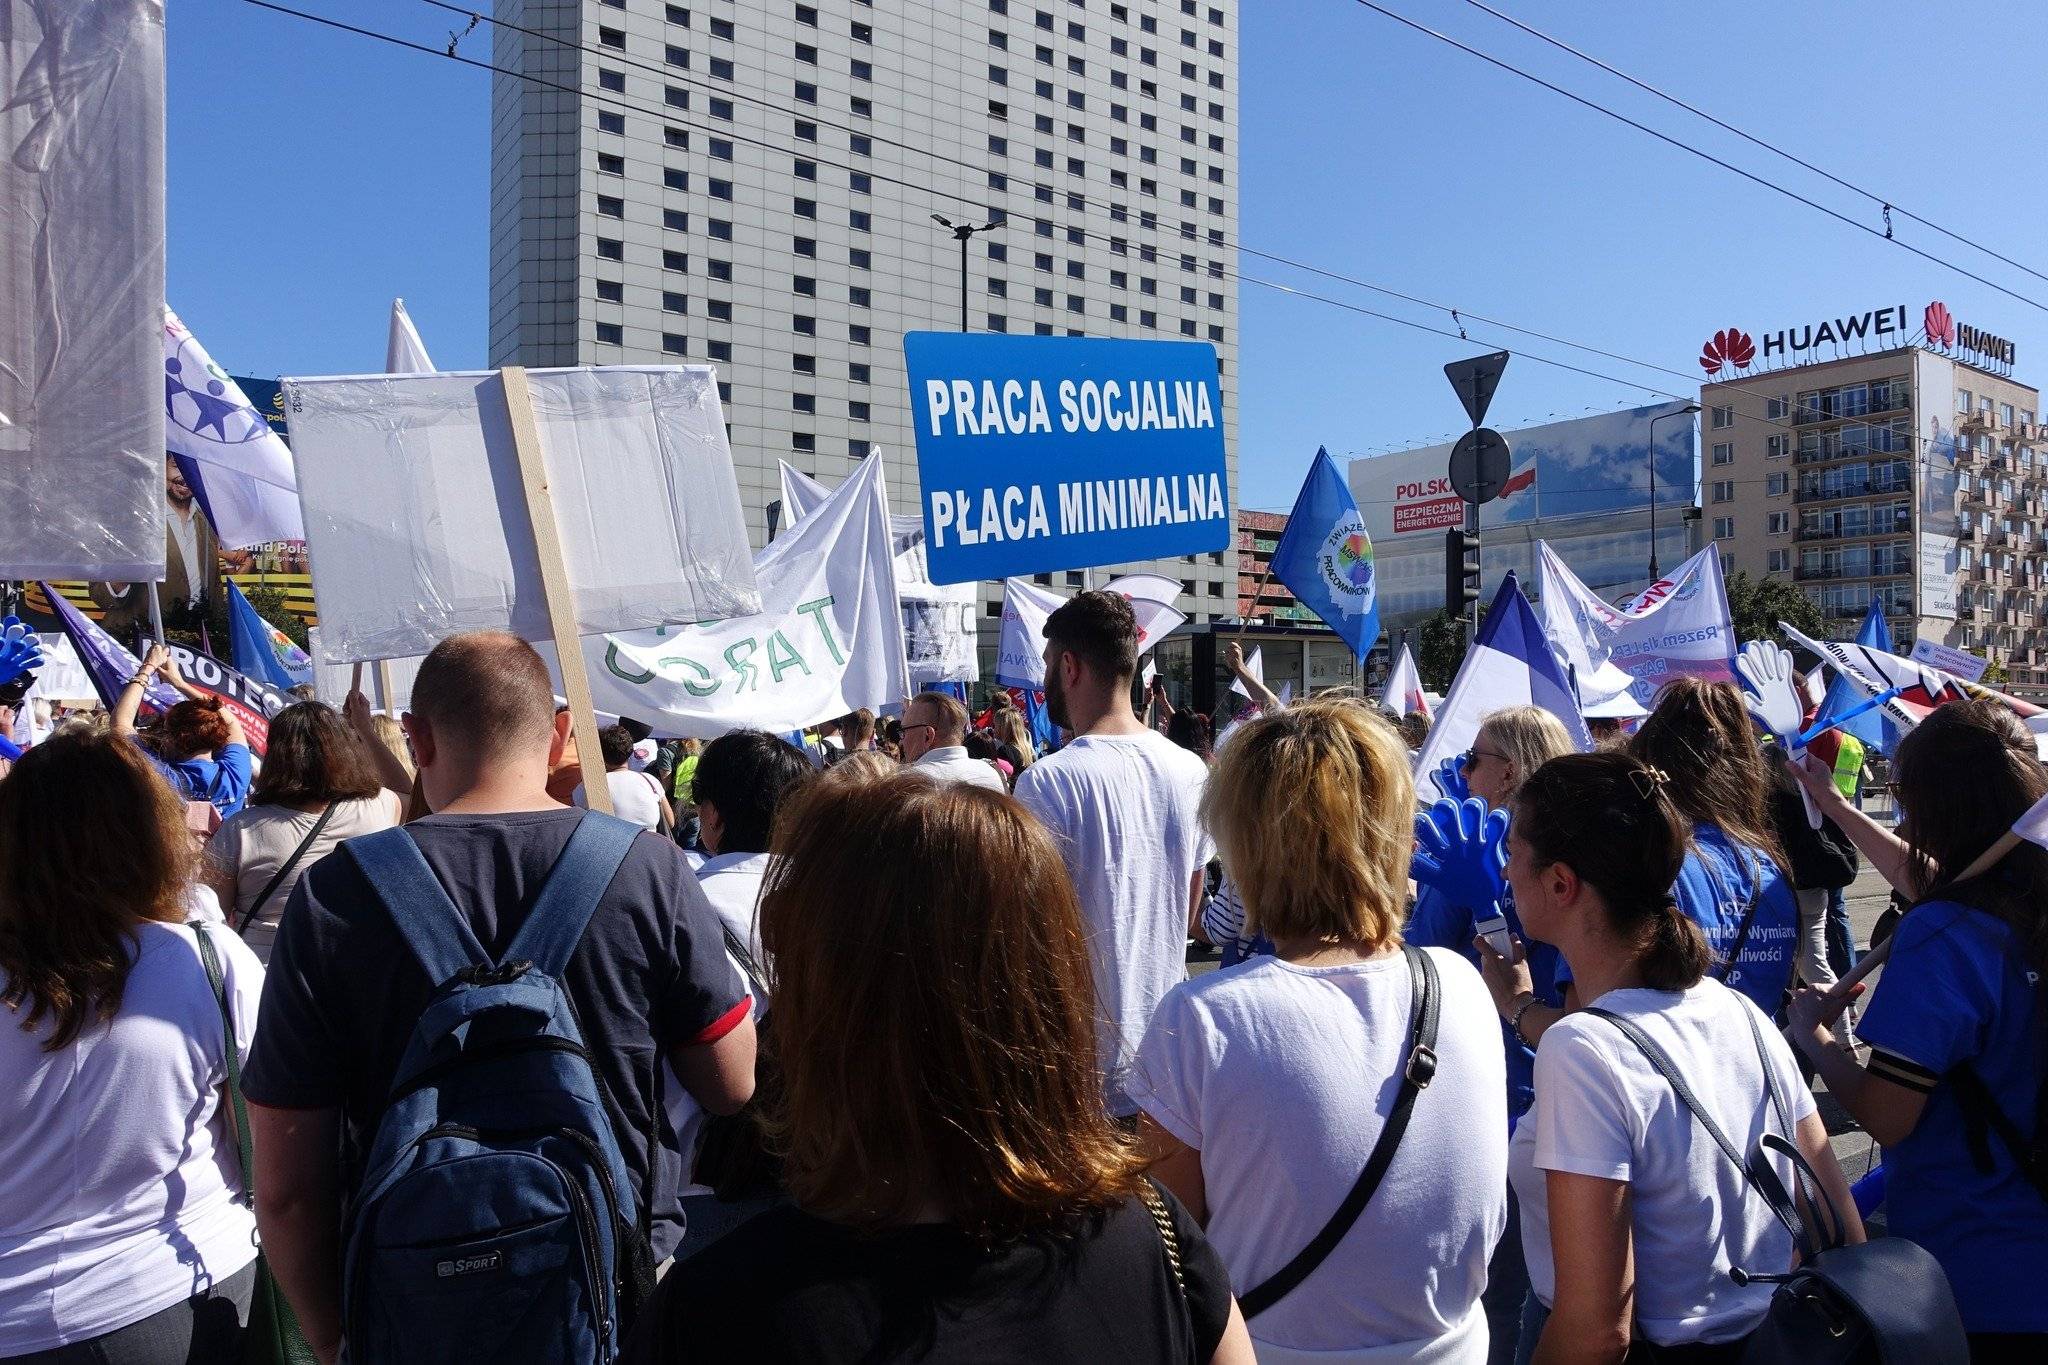 Protest pracowników pomocy społecznej w Warszawie. Transparent: praca socjalna, płaca minimalna